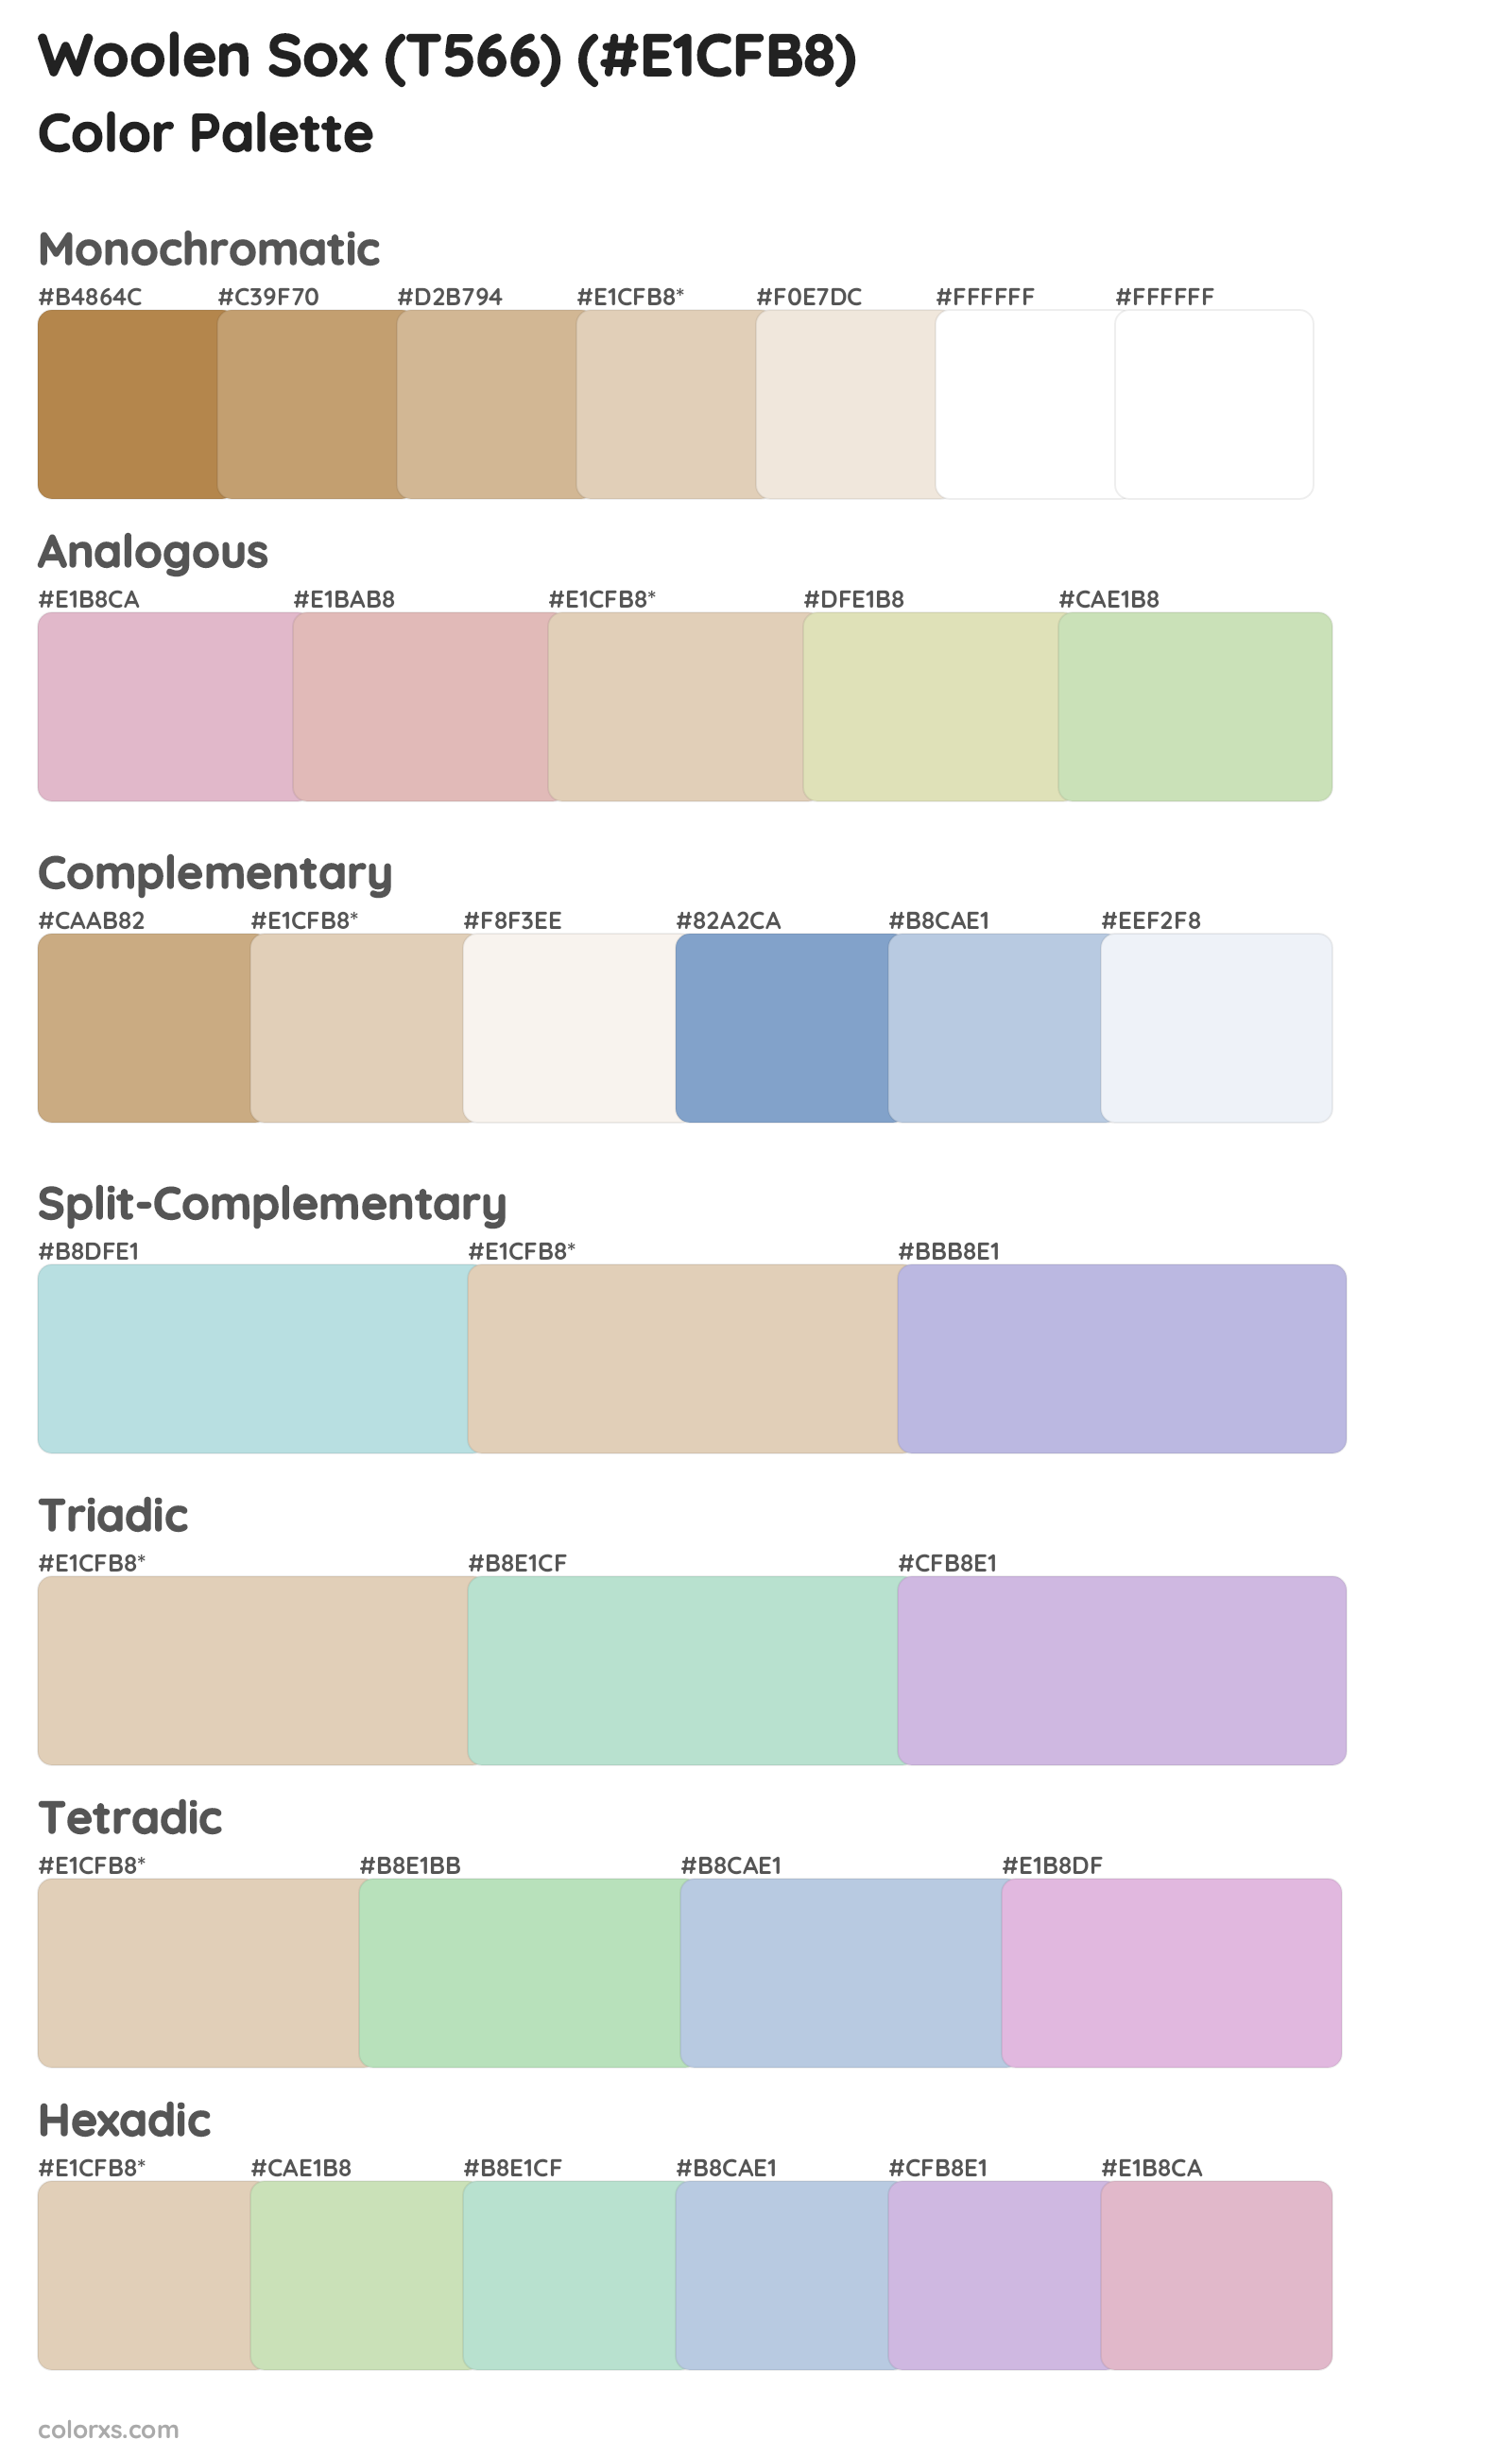 Woolen Sox (T566) Color Scheme Palettes